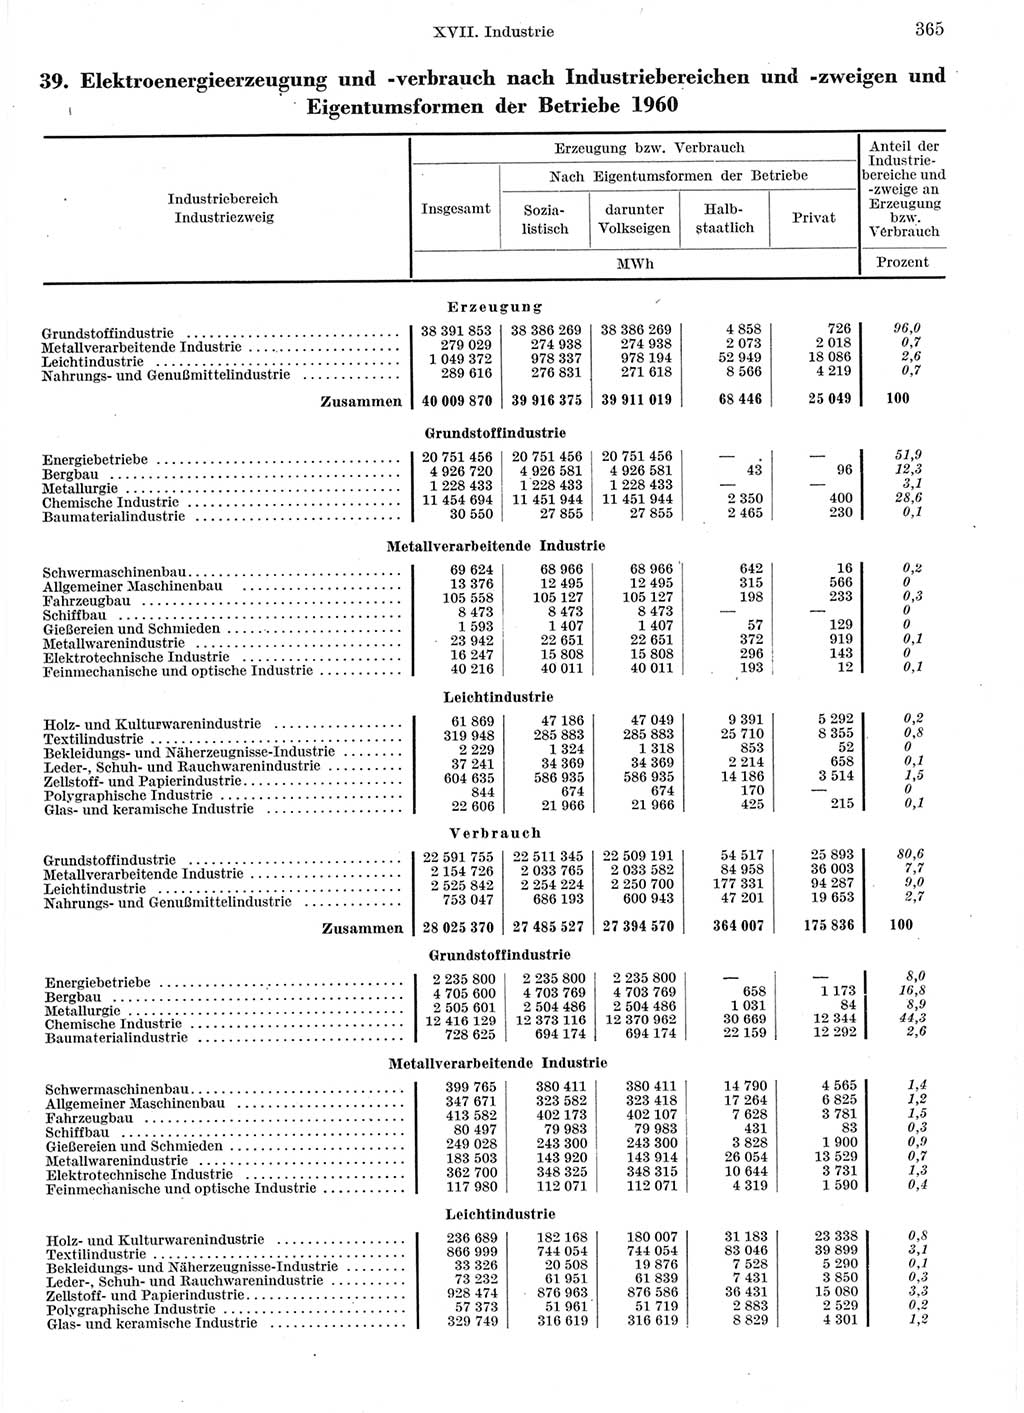 Statistisches Jahrbuch der Deutschen Demokratischen Republik (DDR) 1960-1961, Seite 365 (Stat. Jb. DDR 1960-1961, S. 365)